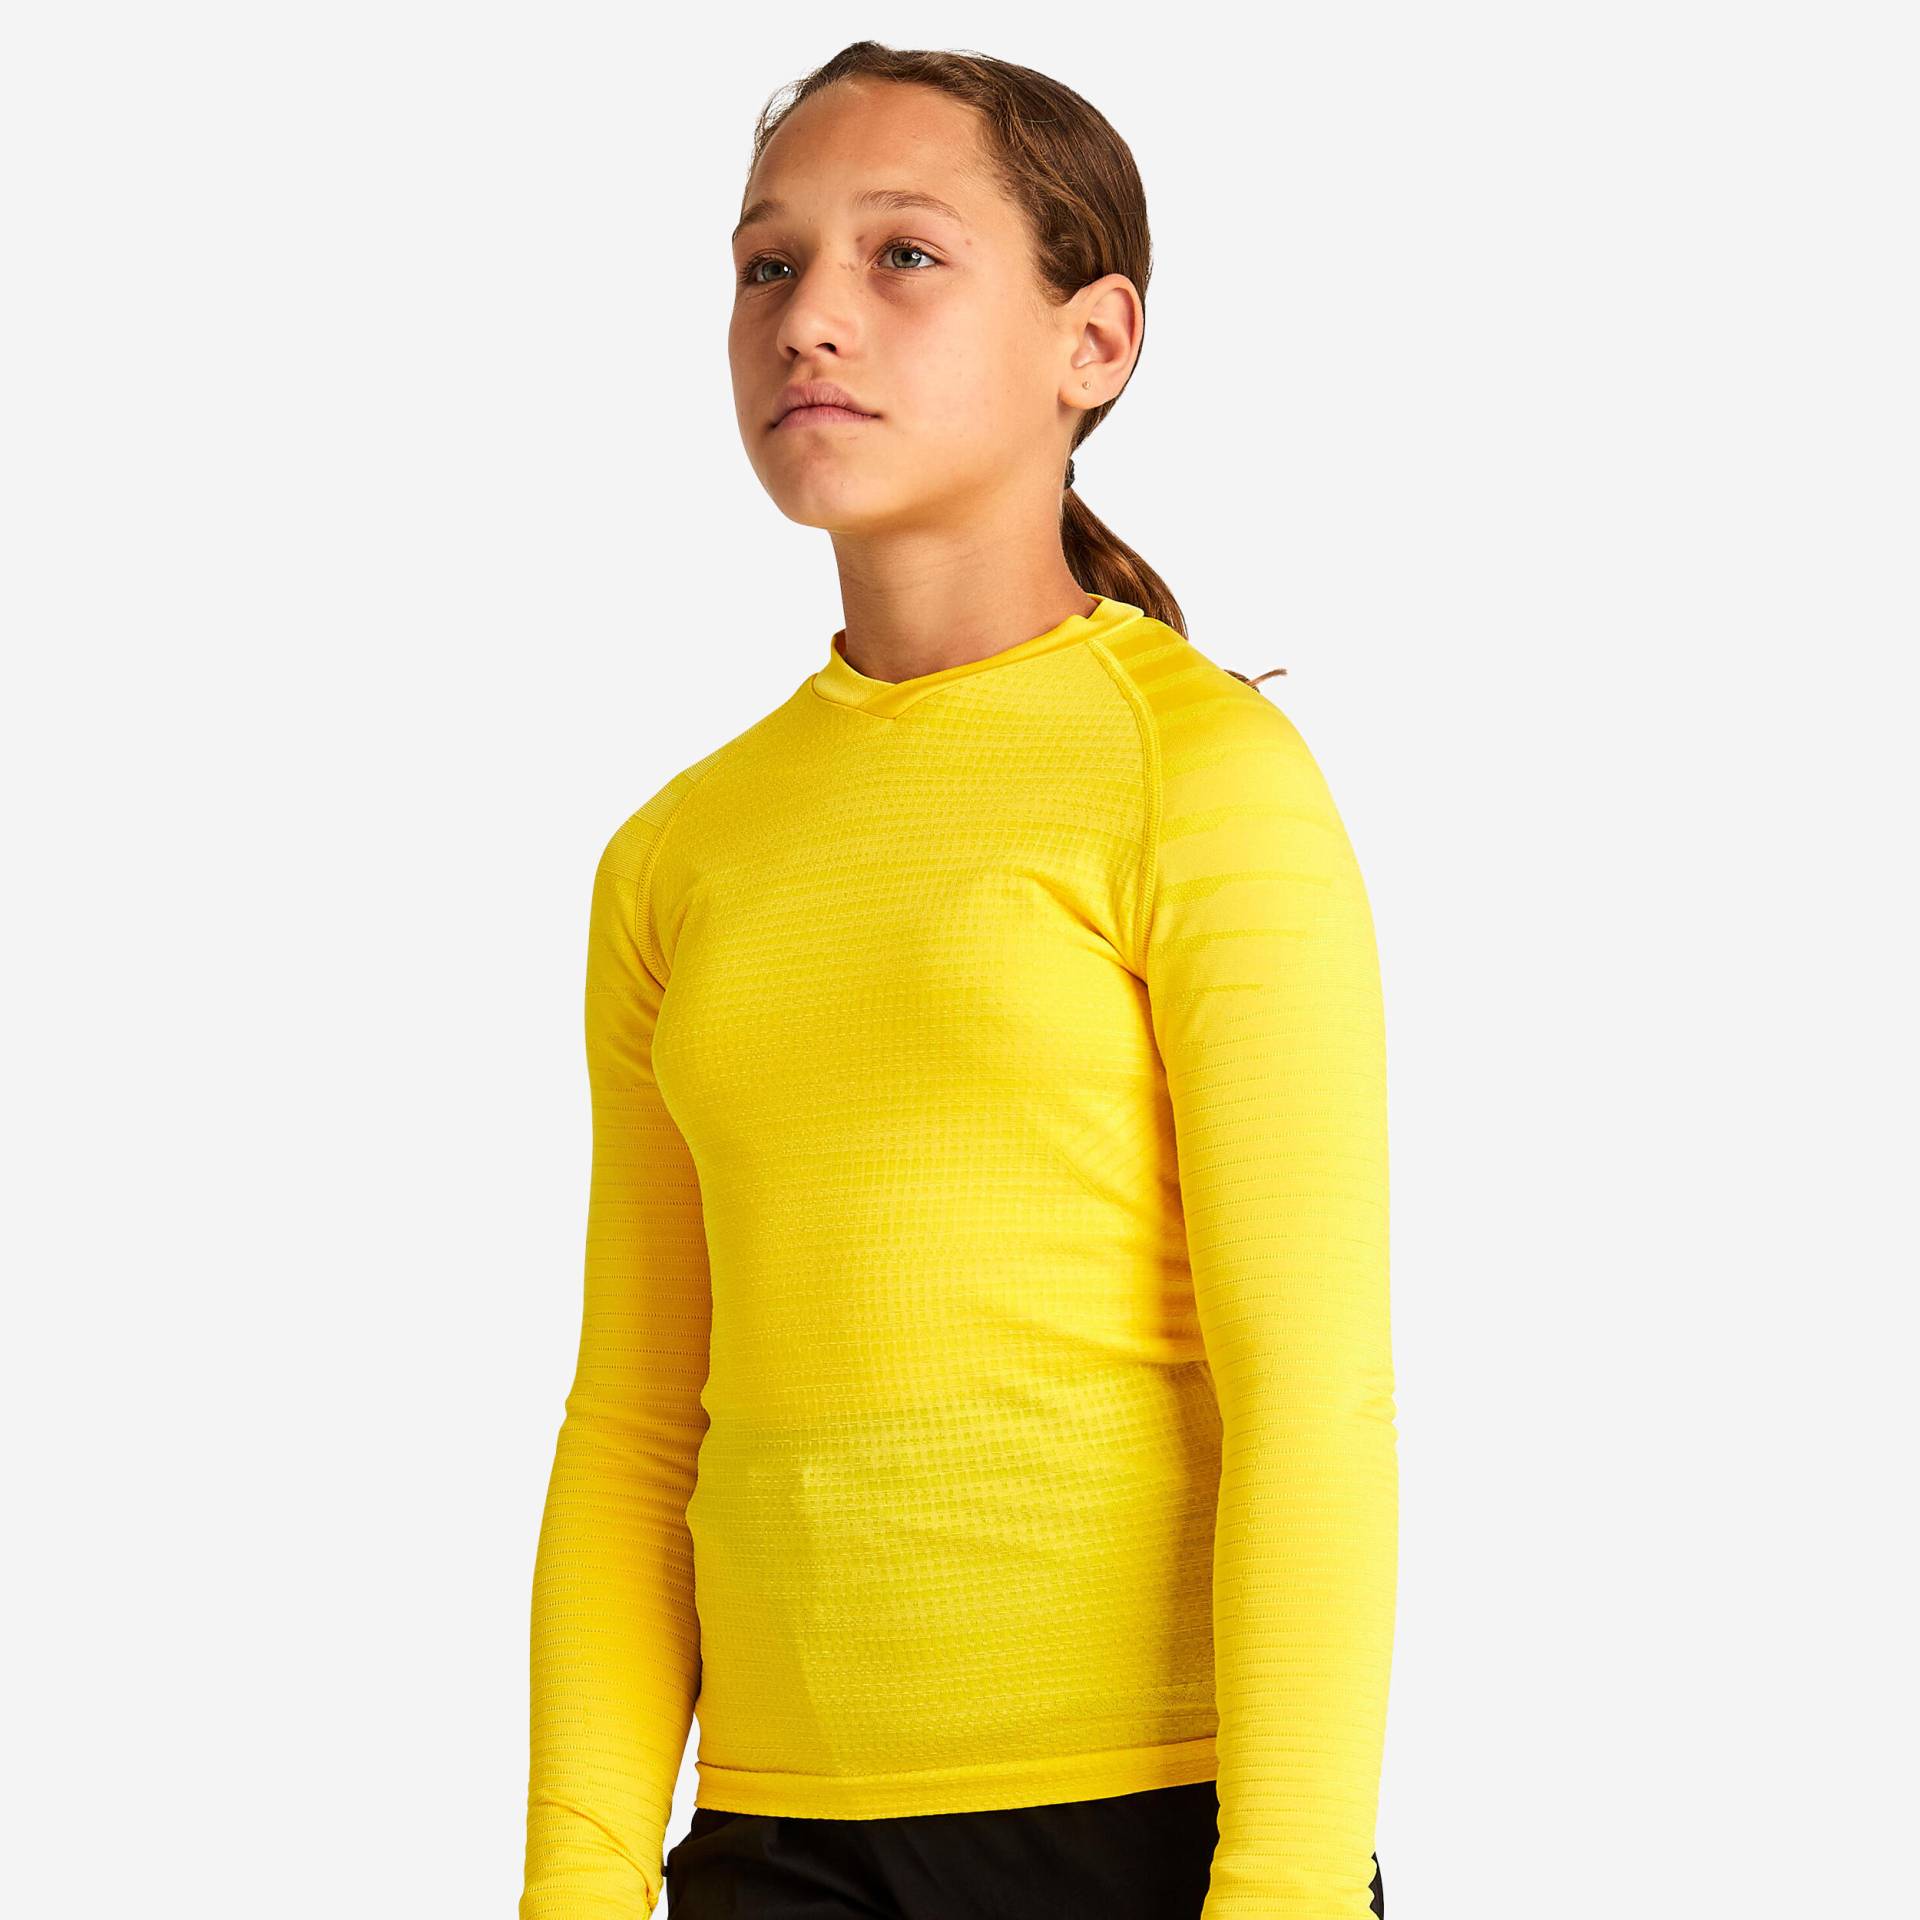 Kinder Fussball Funktionsshirt langarm - Keepdry 500 gelb von KIPSTA